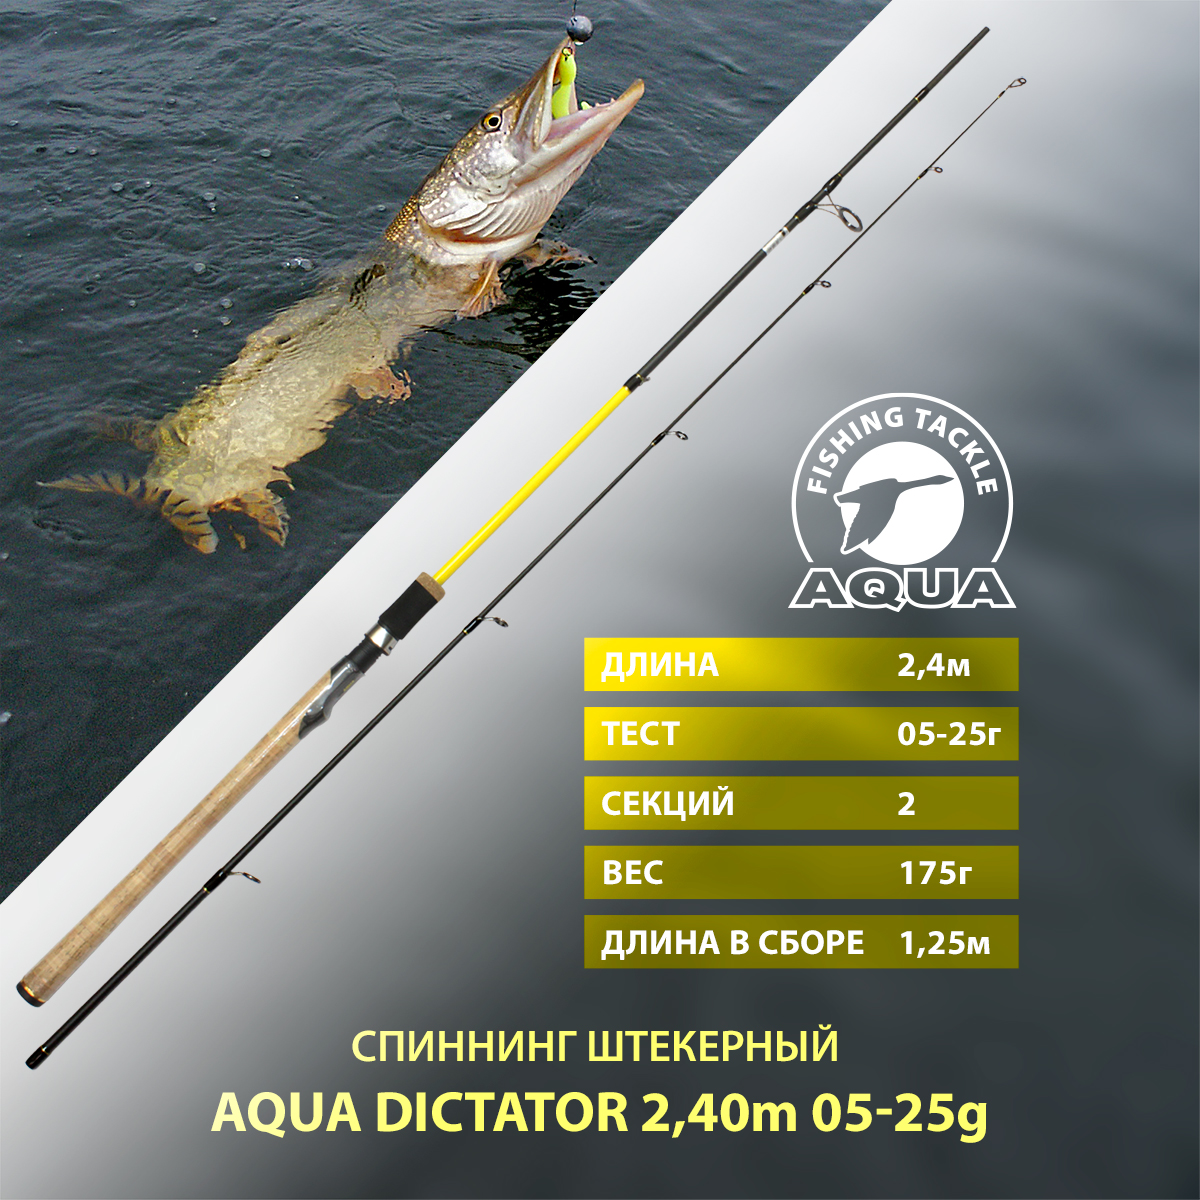 Спиннинг штекерный для рыбалки AQUA DICTATOR